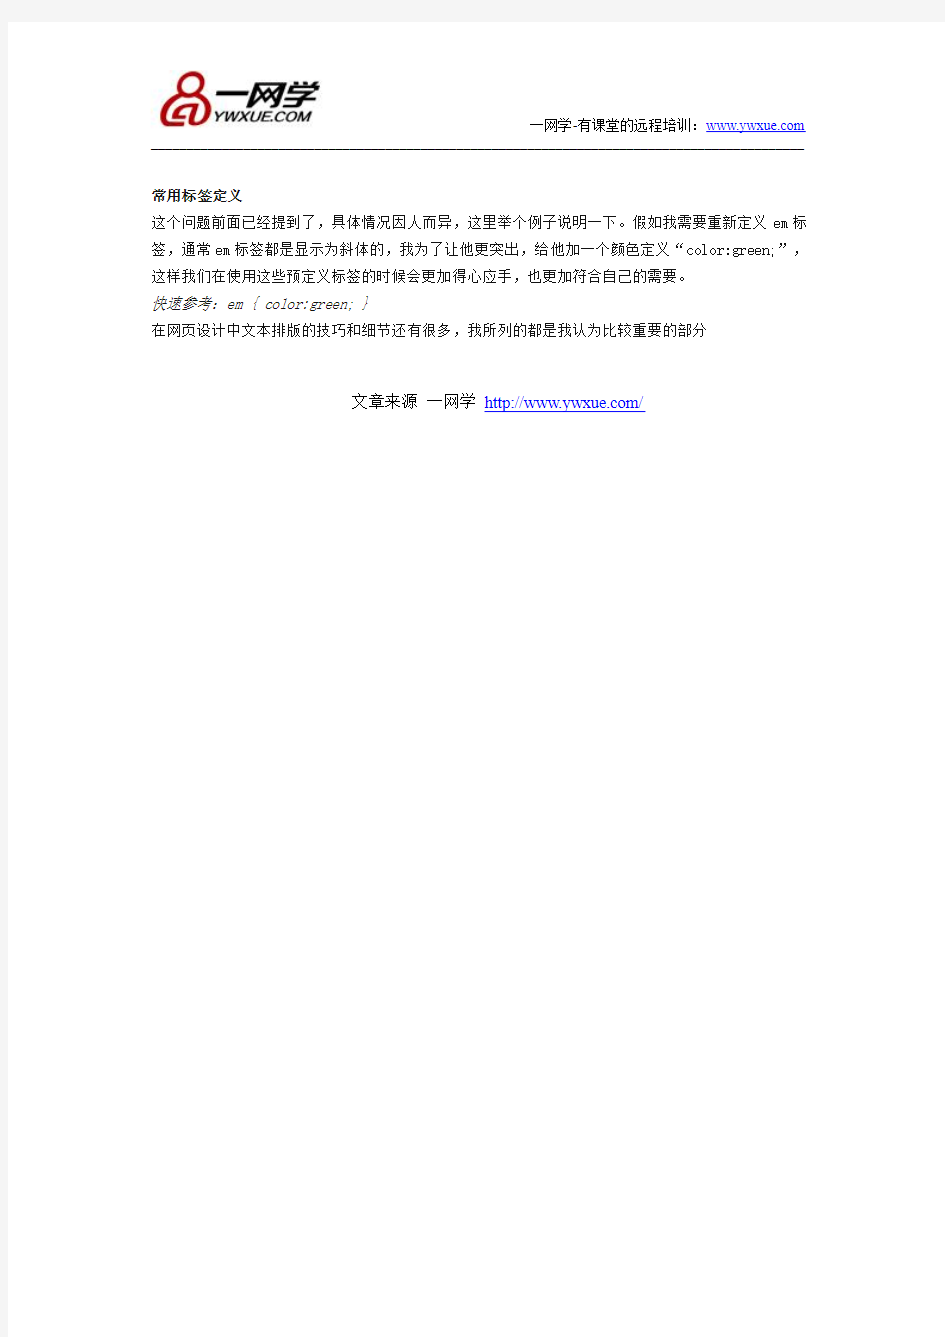 网页设计中文本排版的技巧和细节